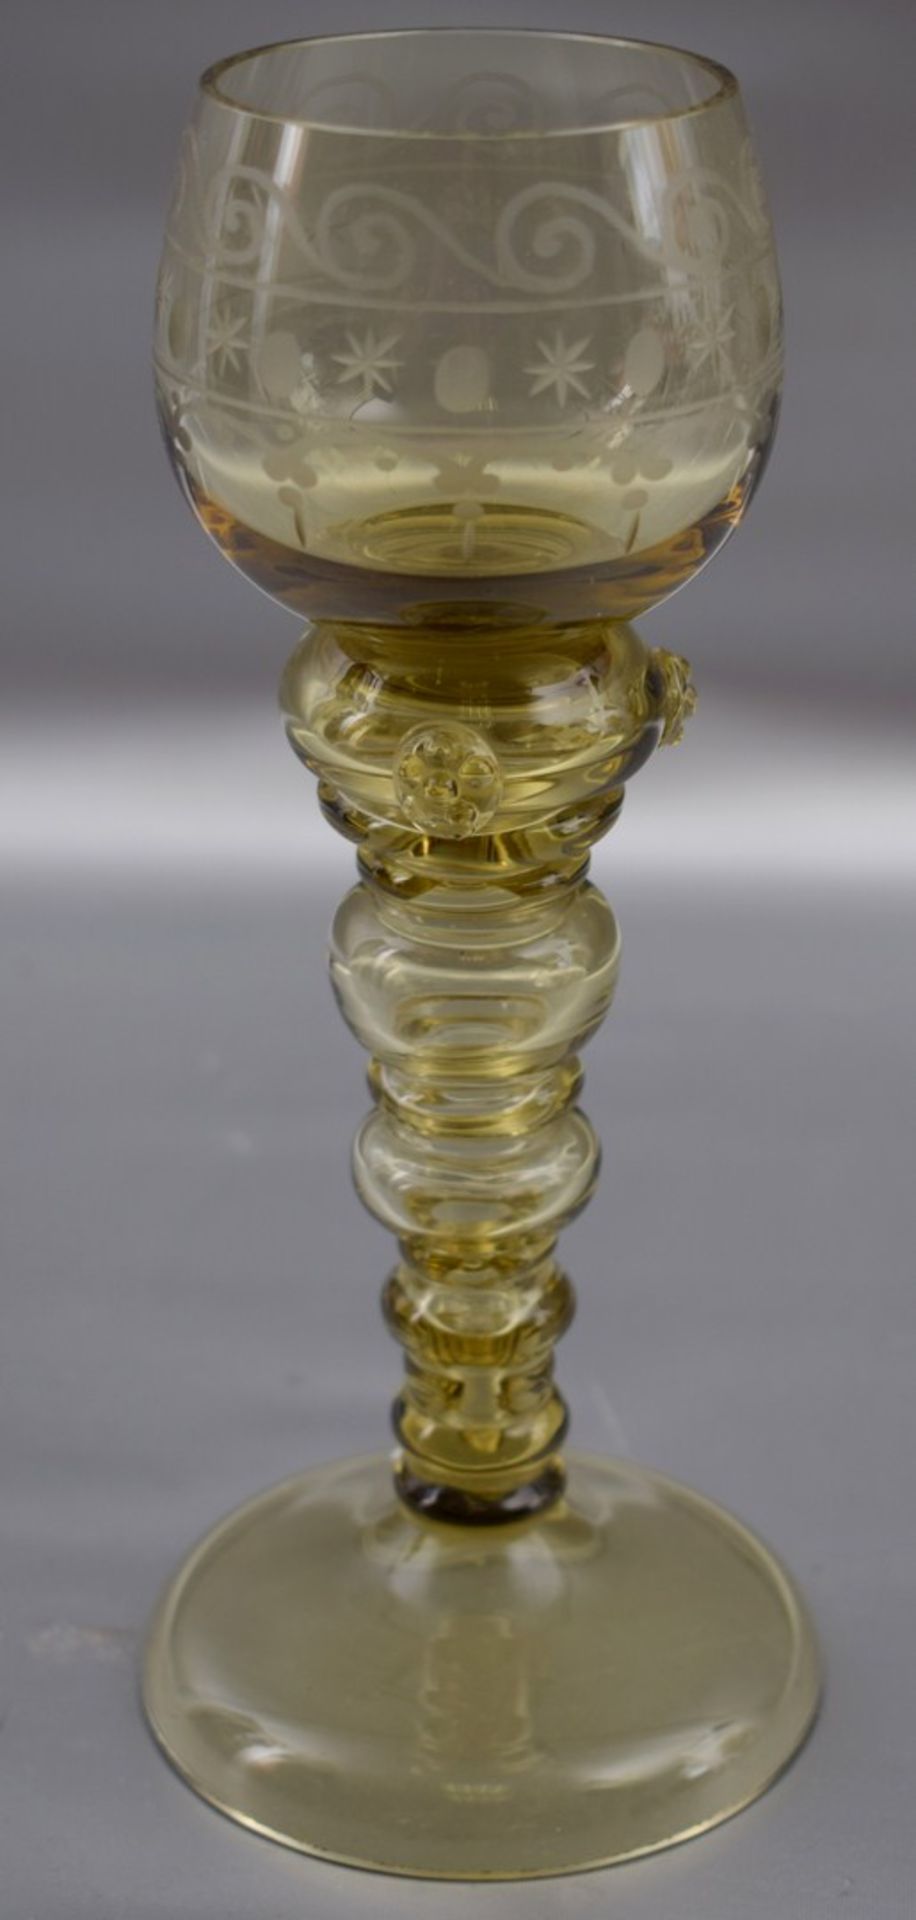 Weinglas farbl. Glas, geschliffen verziert, runder Fuß, best., Schaft mit Noppen, H 20 cm, um 1900